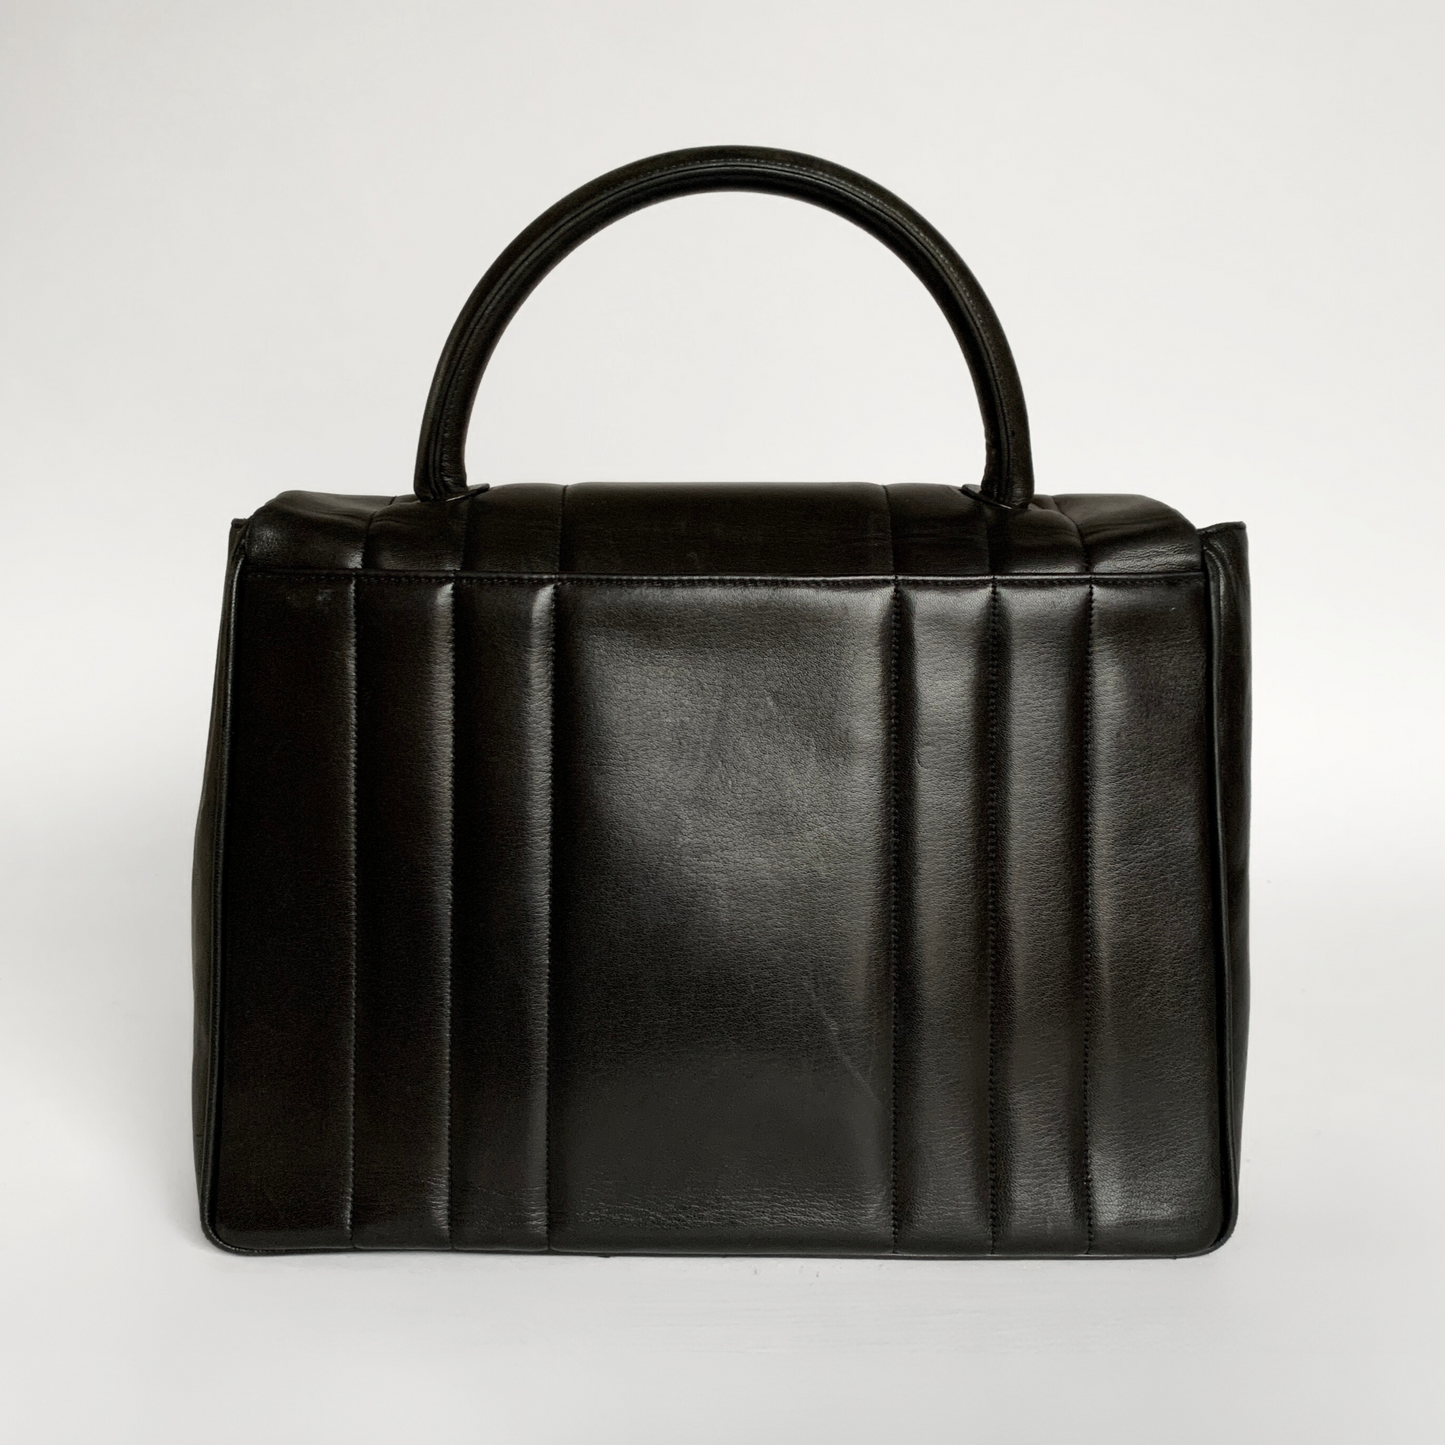 Chanel Chanel Top Handle Bag Lambskin Leather - Handbags - Etoile Luxury Vintage